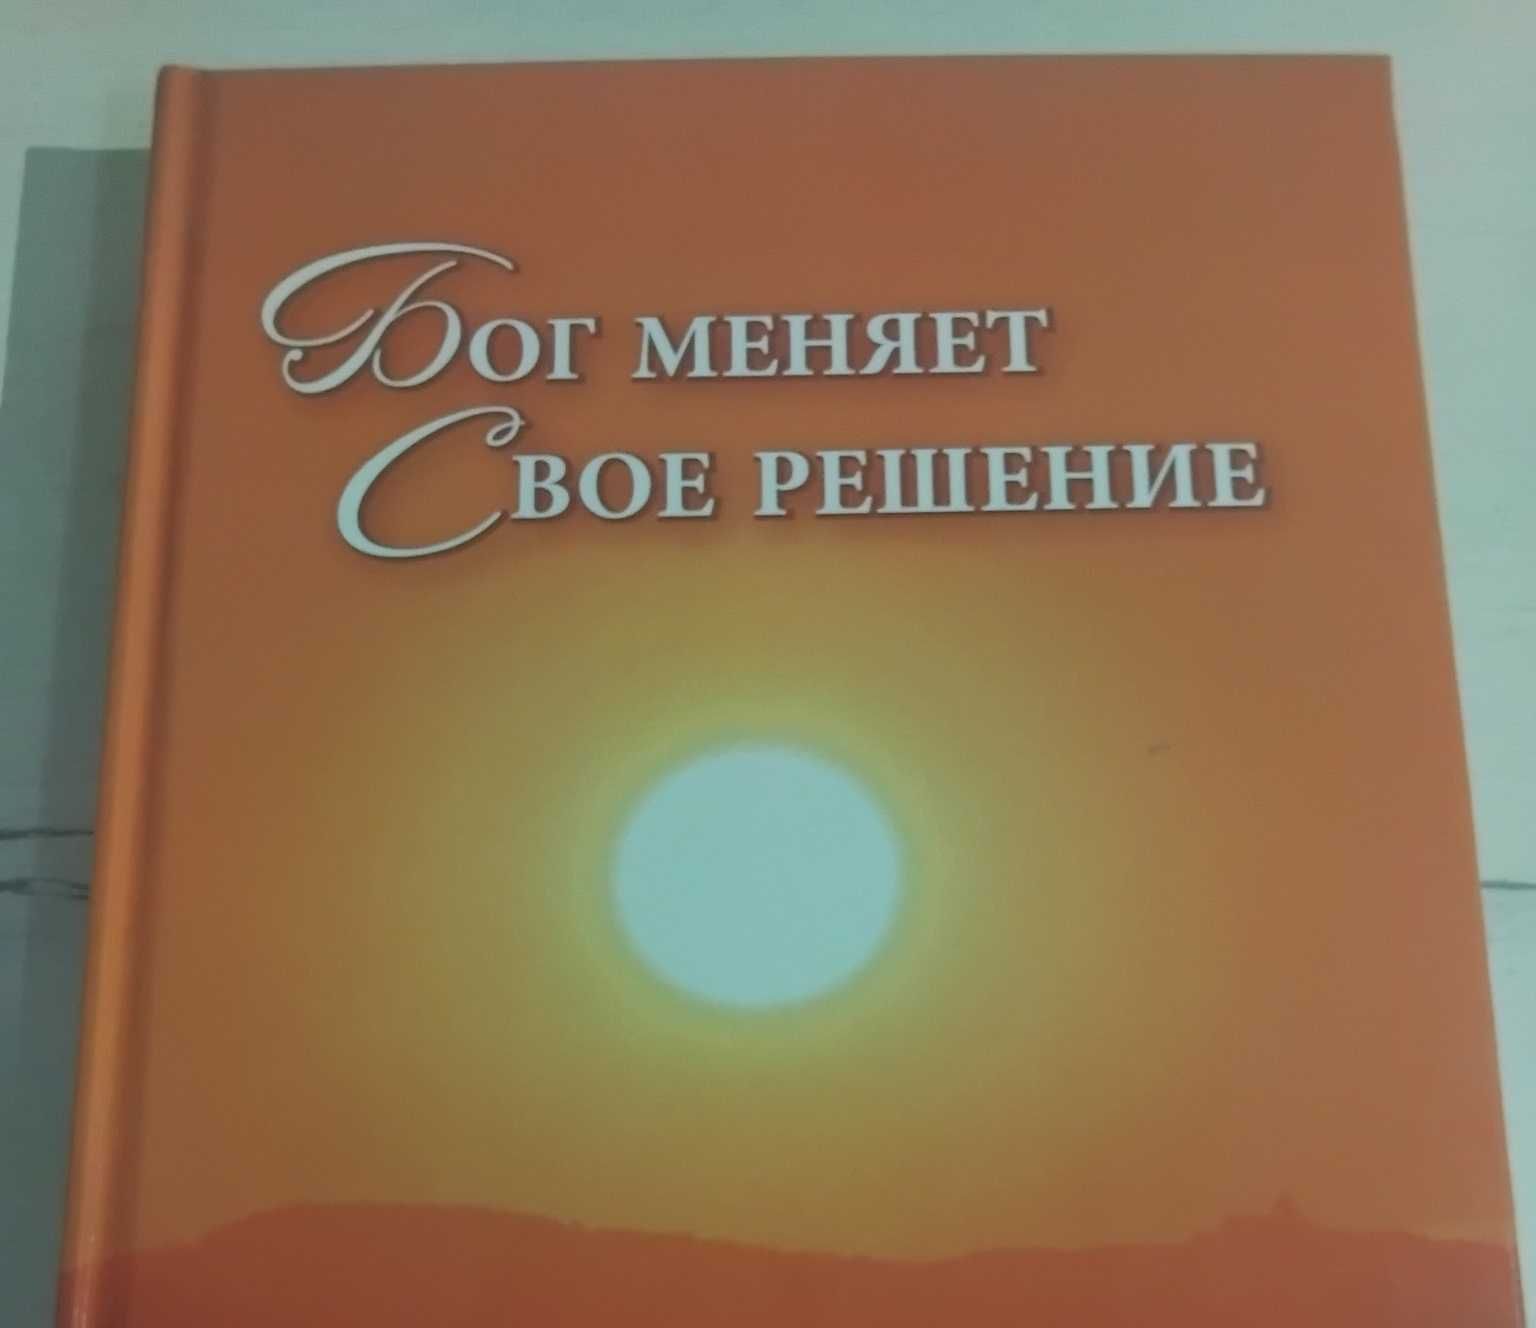 Книга Анны Мержиевской  "Бог меняет Свое решение"